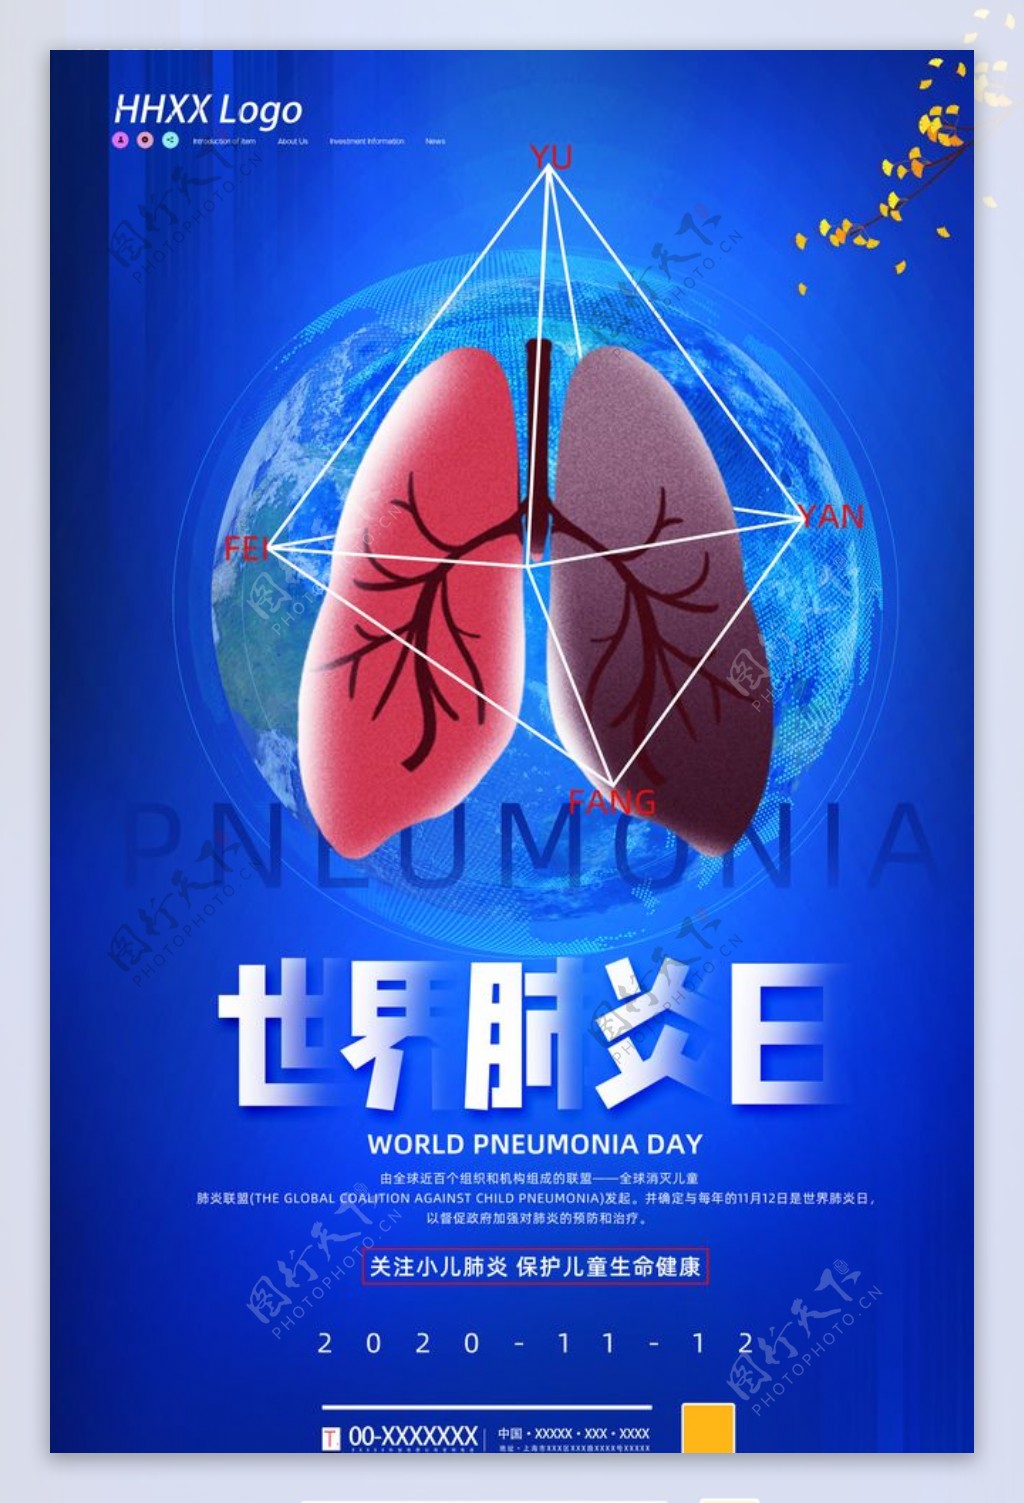 世界肝炎日图片